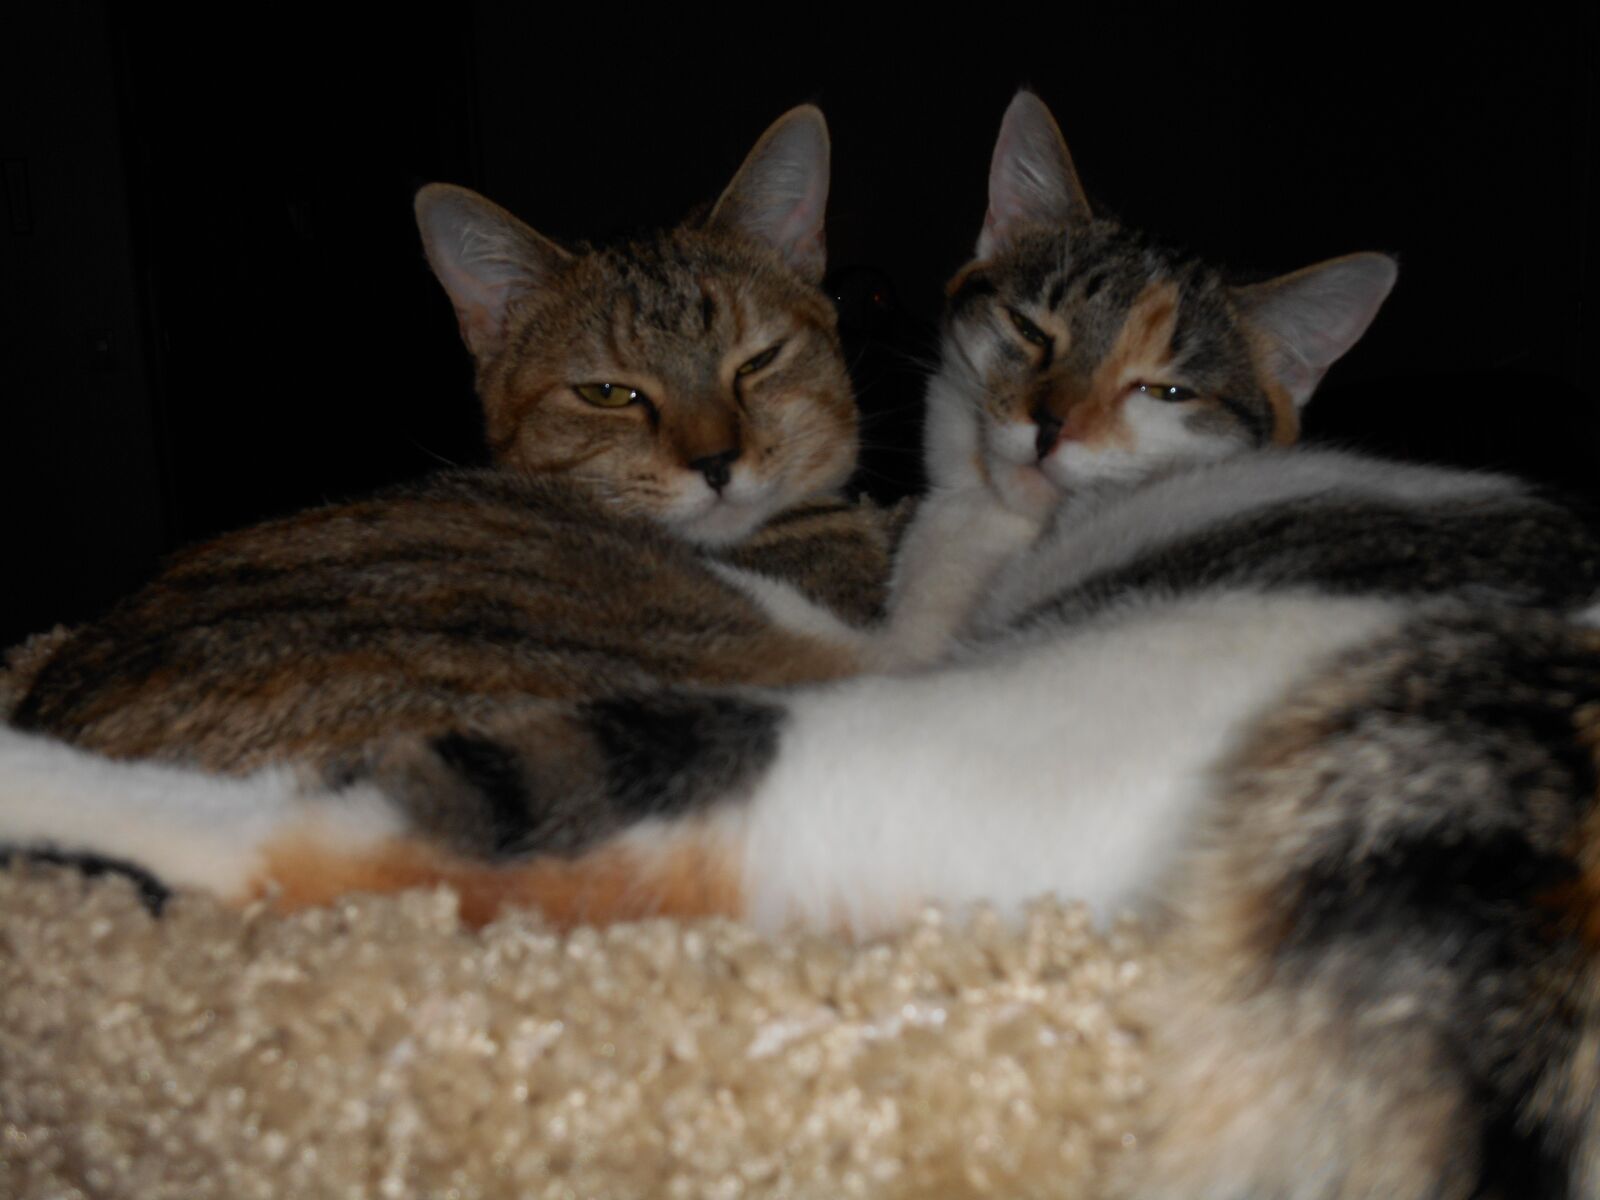 Nikon Coolpix S3500 sample photo. Pet, animals, cat photography